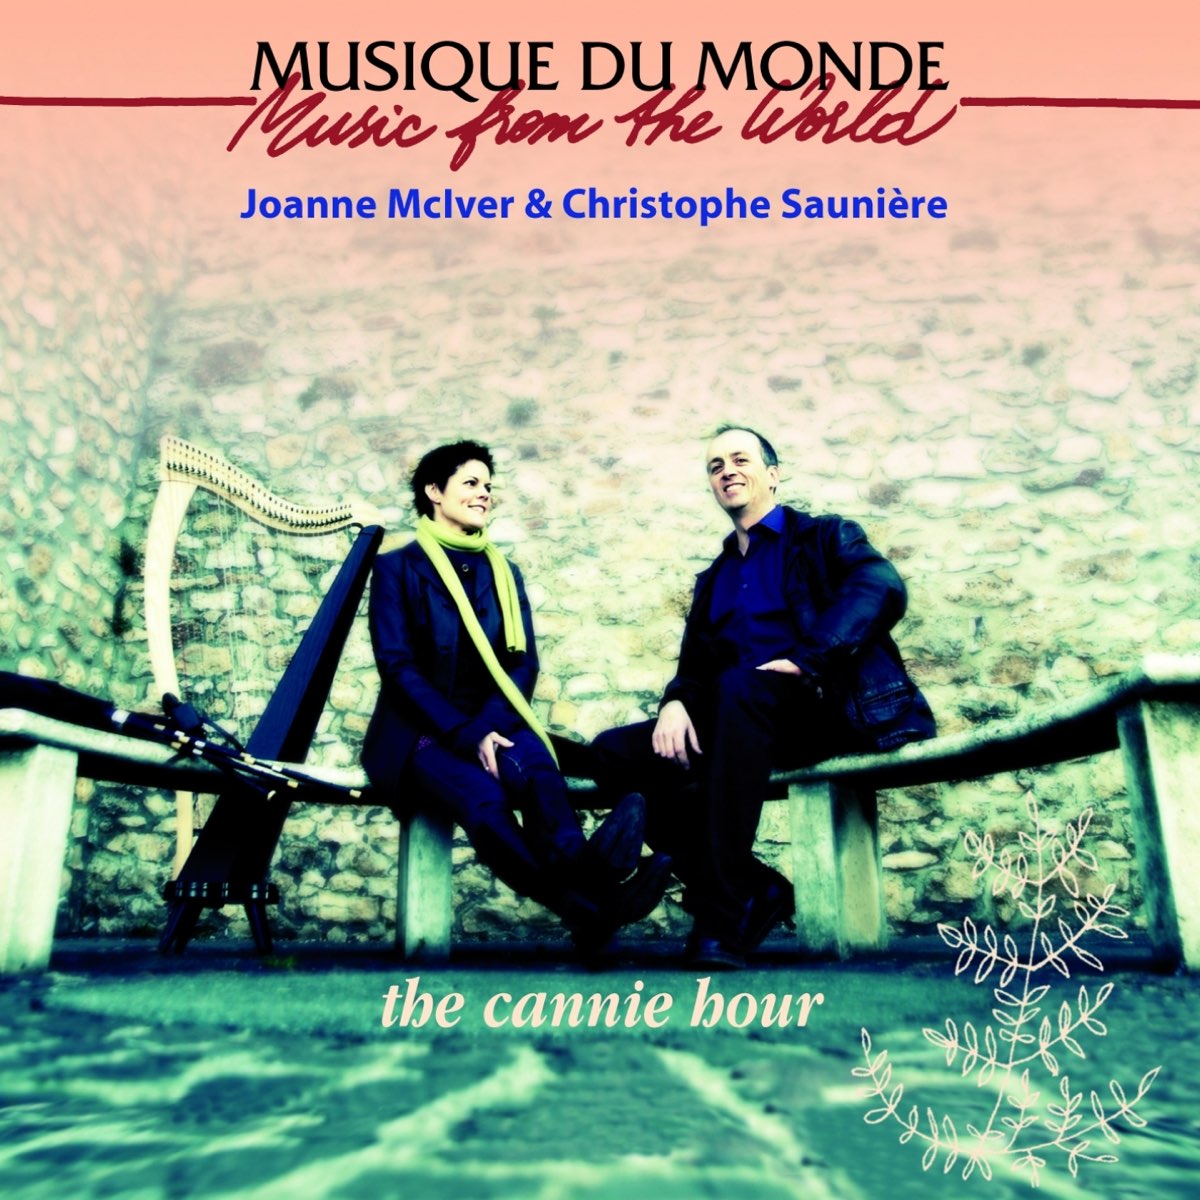 The Cannie Hour par Joanne McIver & Christophe Sauniere sur Apple Music